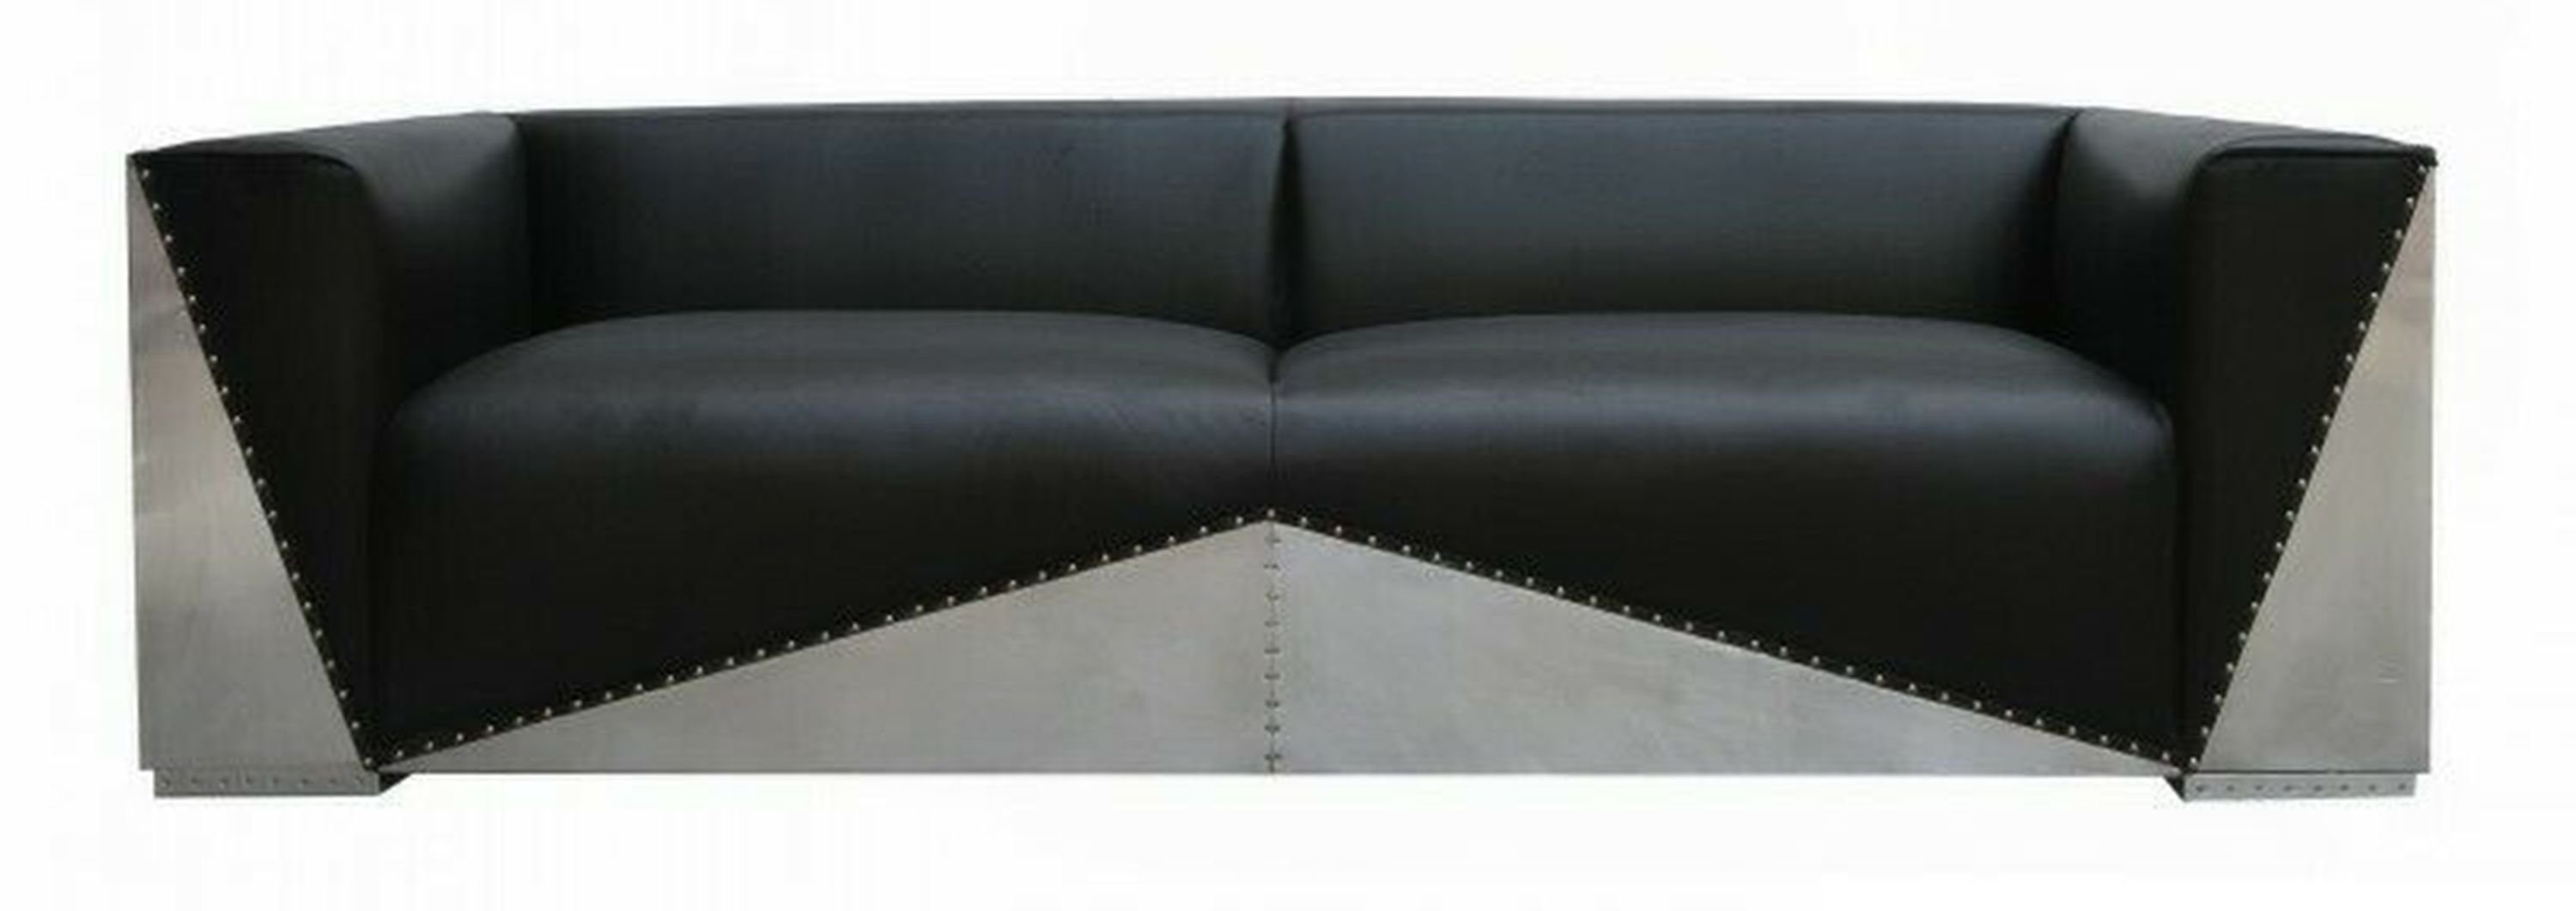 JVmoebel Sofa, Design Luxus Echtleder Sofa Couch Ledersofa Couchen Polster Möbel